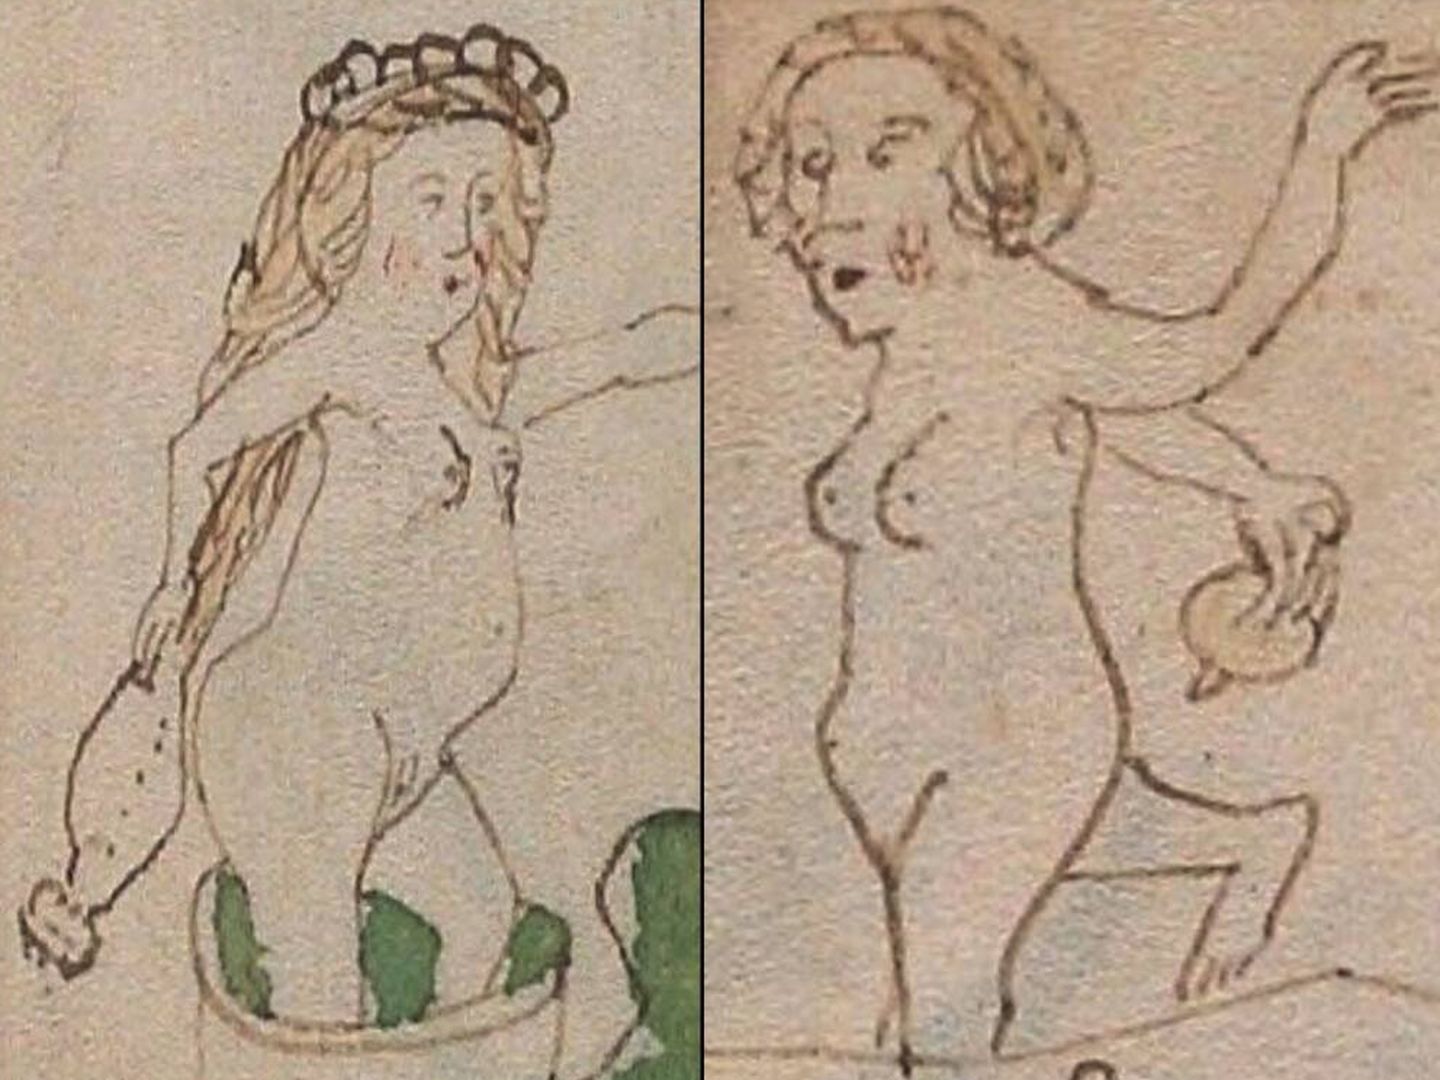 Las mujeres ilustradas en el manuscrito aparecen sosteniendo objetos no identificados hacia sus genitales. (Universidad de Yale)